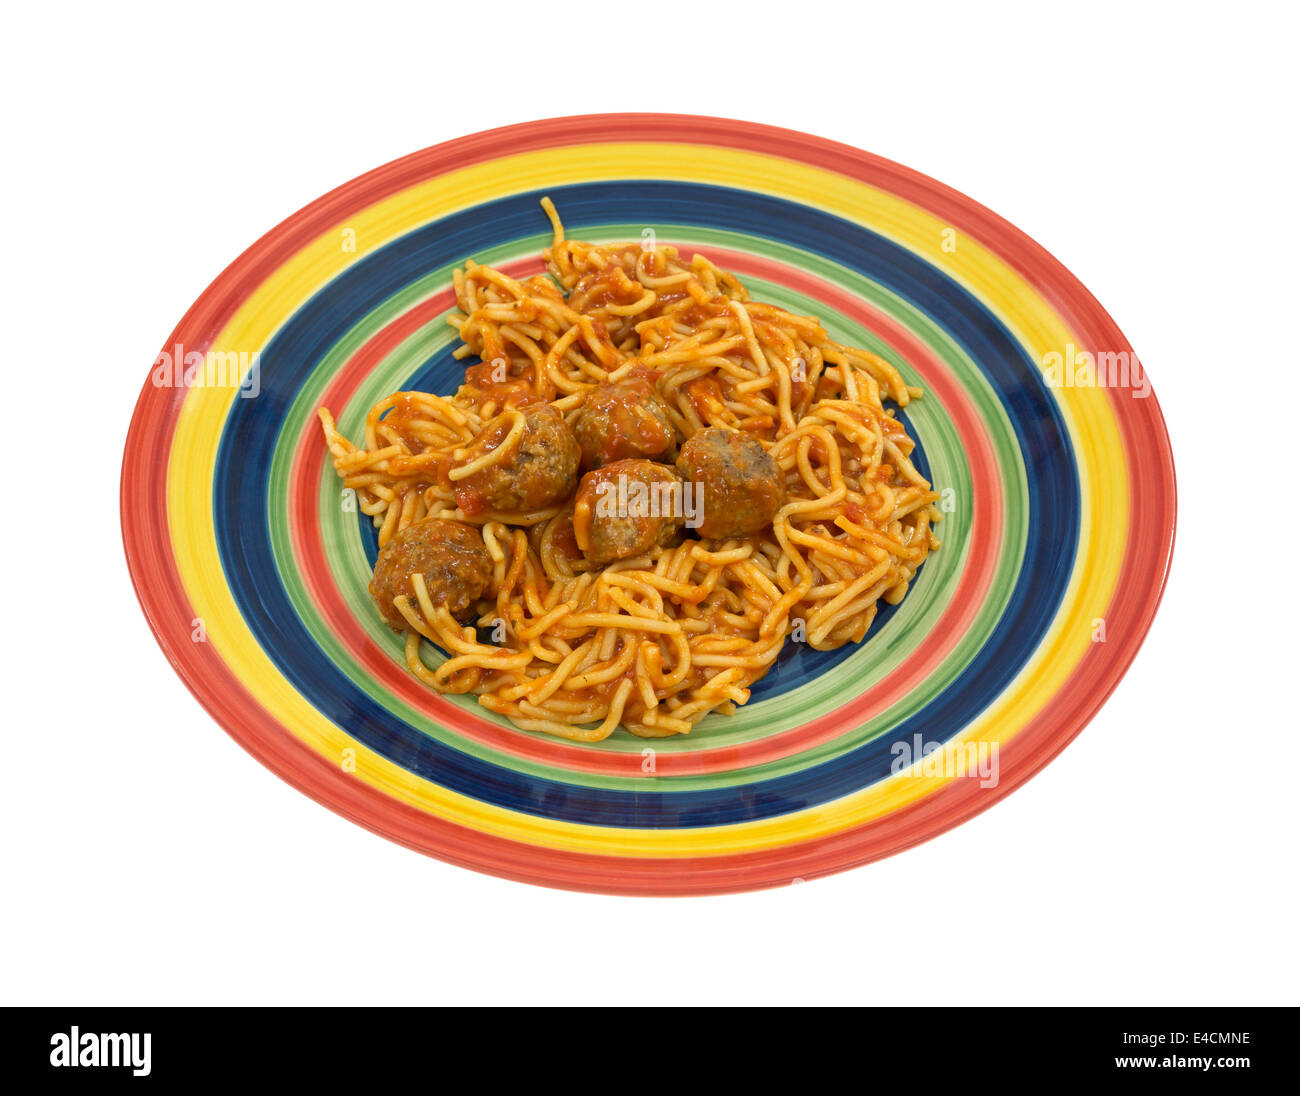 Eine Portion Spaghetti und Fleischbällchen auf einem bunten Teller isoliert auf einem weißen Hintergrund. Stockfoto